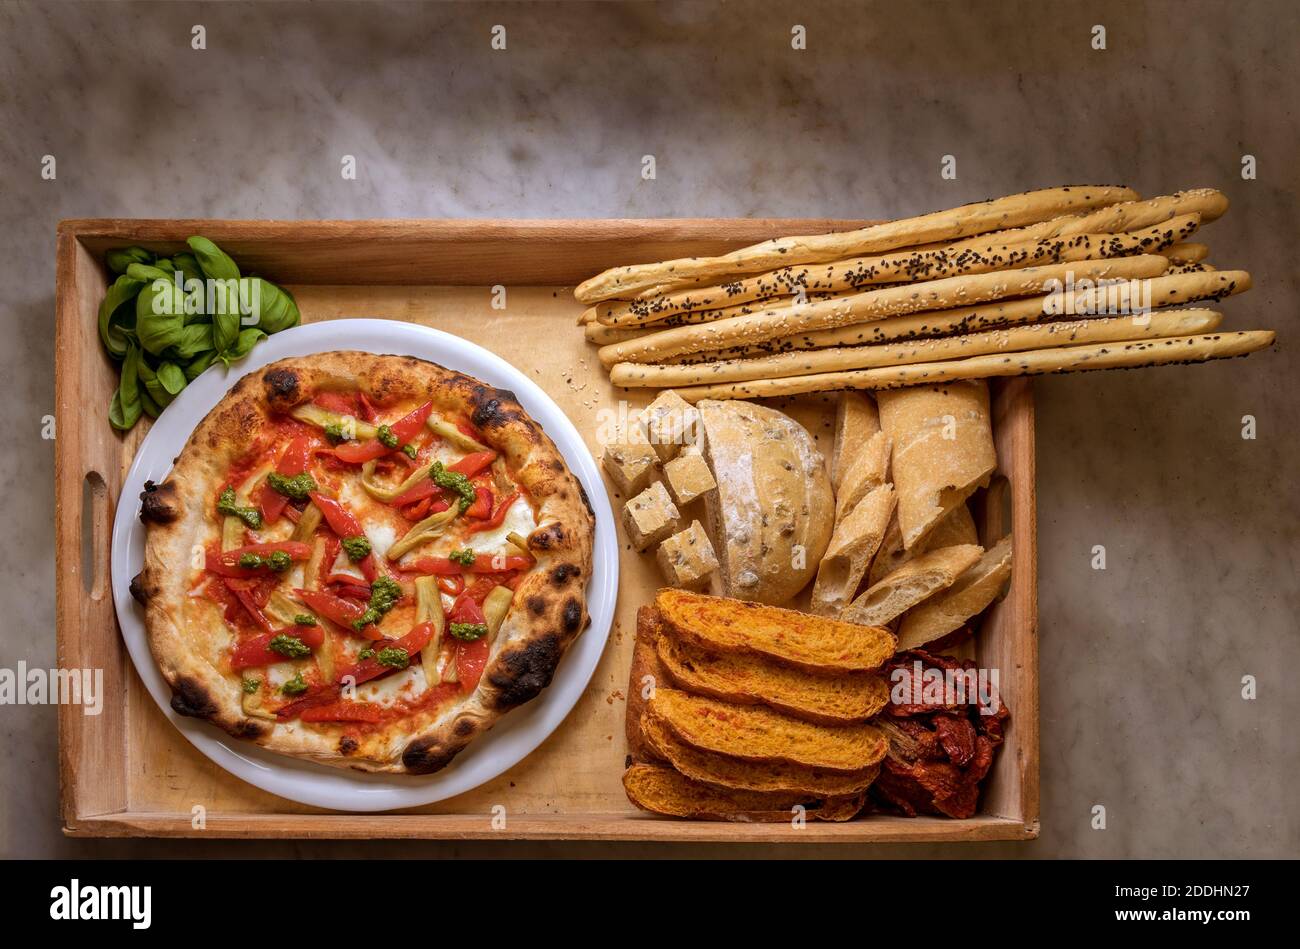 Pizza mit Paprika und Arten von Brot und Brot Sticks in rustikalen Holztablett. Lebensmittel, die reich an Kohlenhydraten. Draufsicht Stockfoto